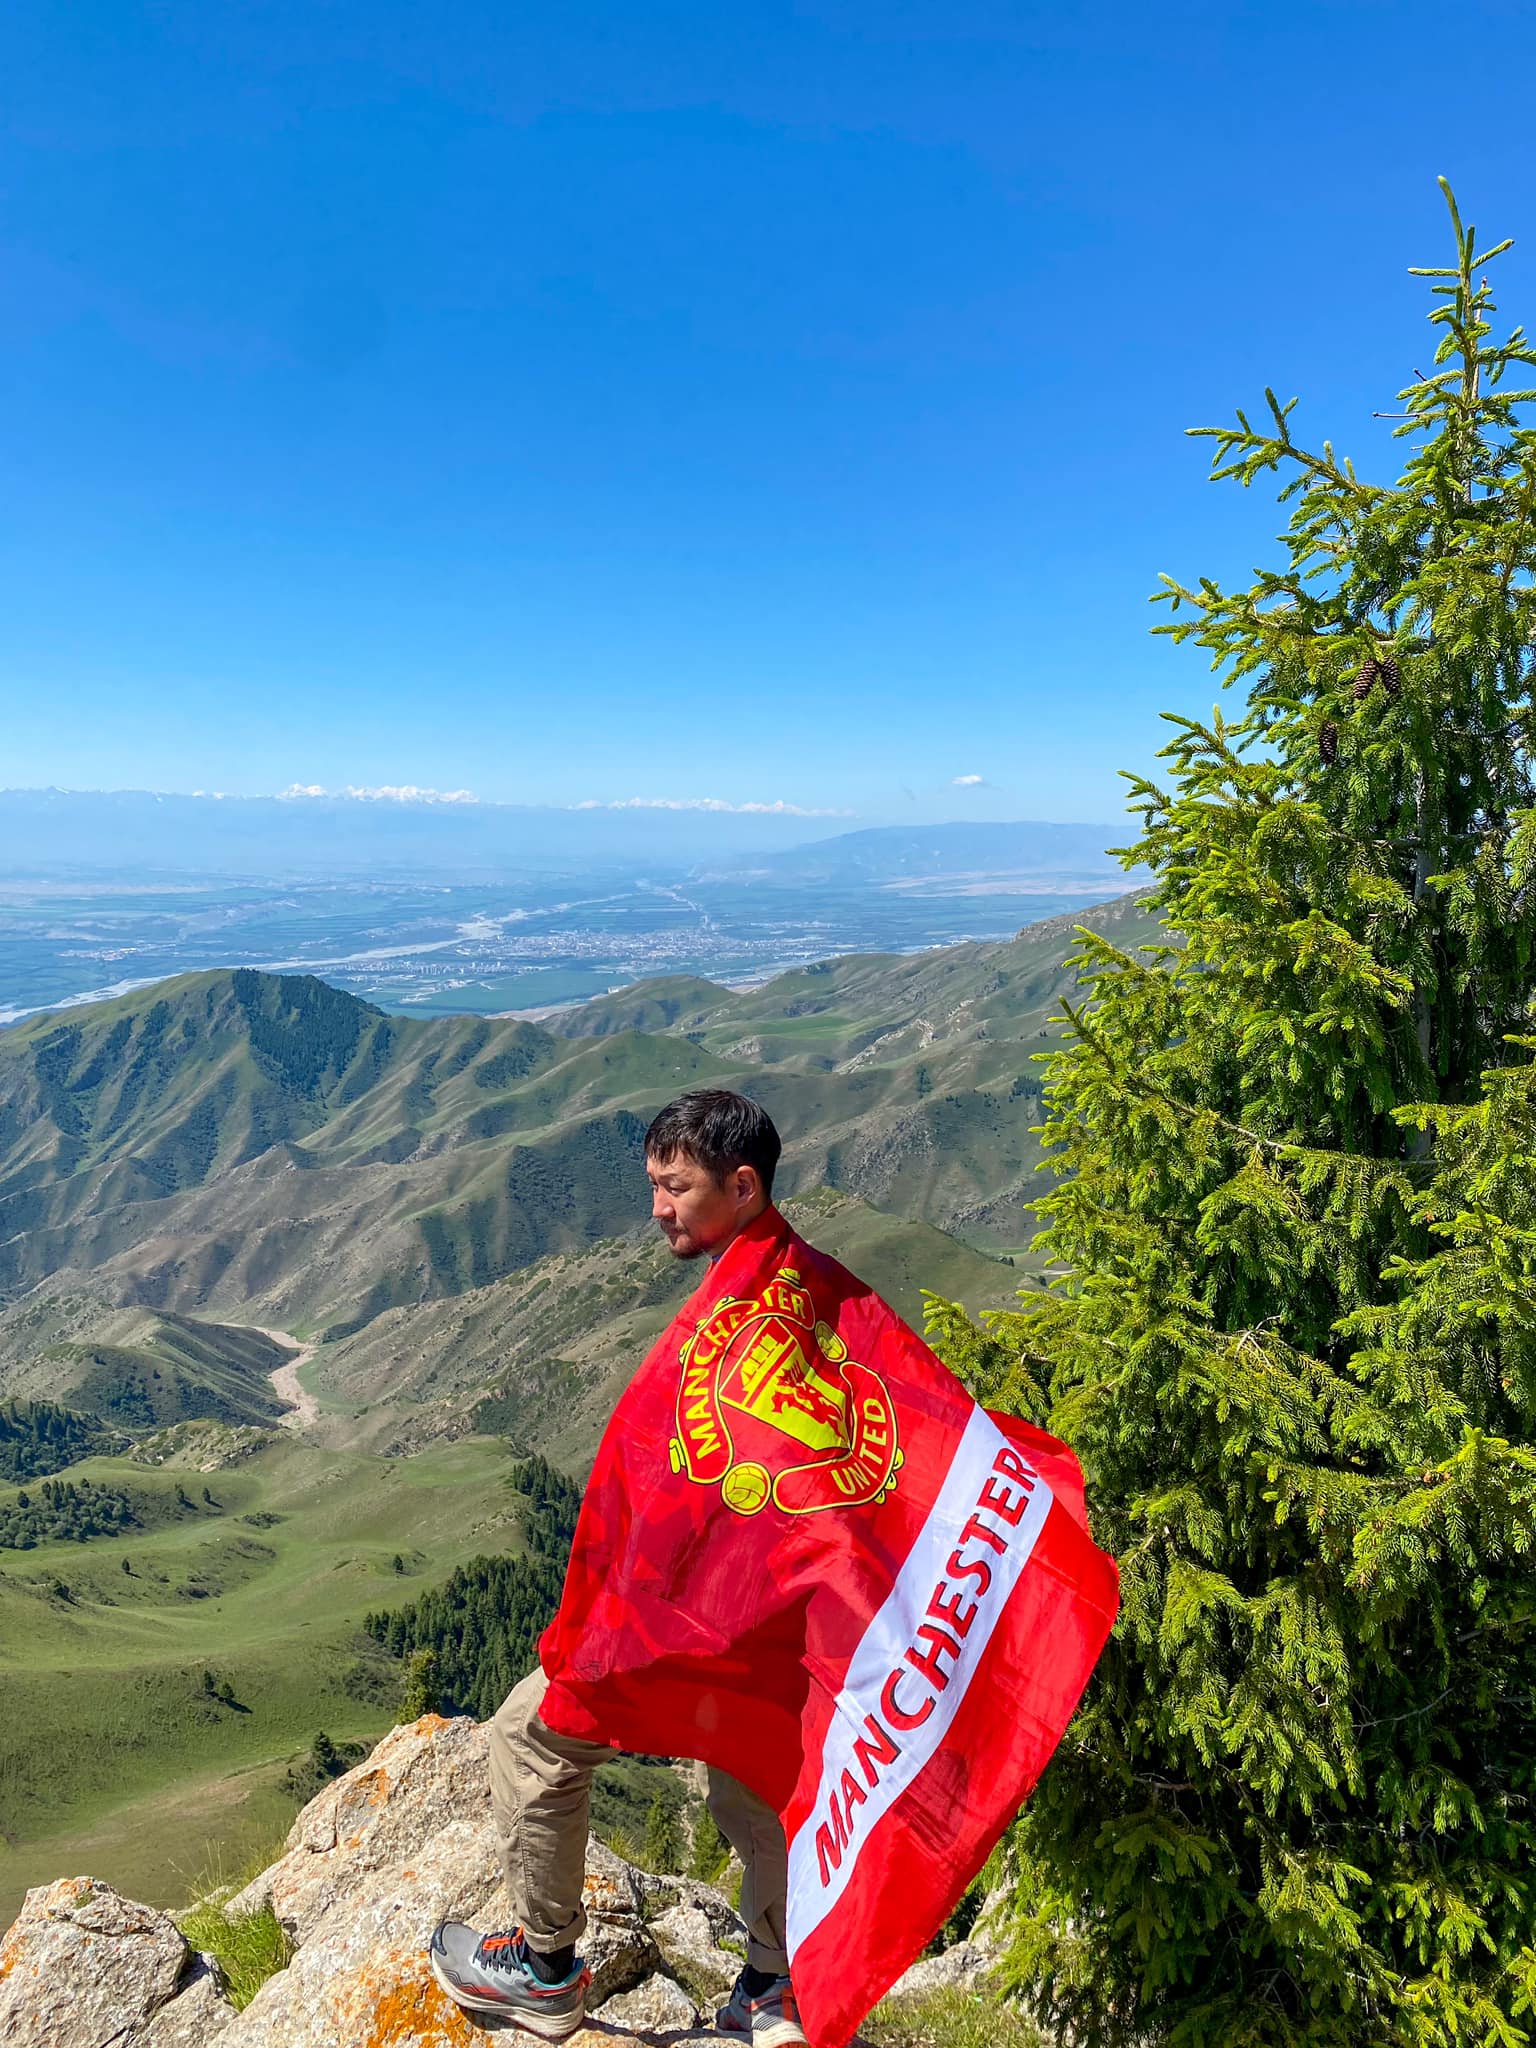 Дугуйгаар 19 улсыг 14,000 км туулсан Монгол залуугийн түүх